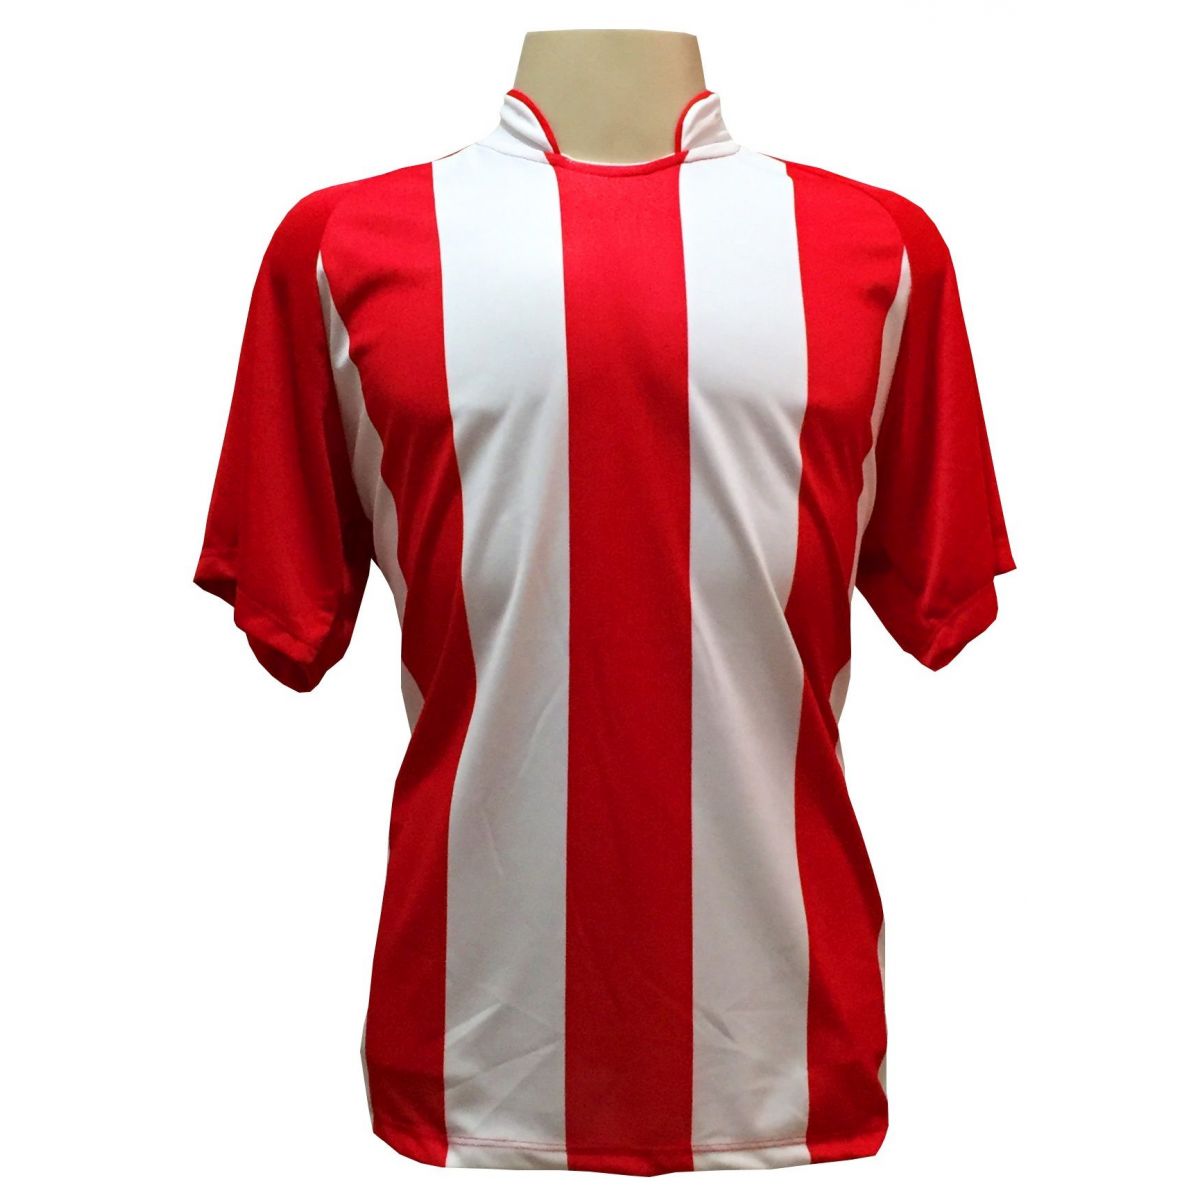 Uniforme Esportivo com 20 camisas modelo Milan Vermelho/Branco + 20 calções modelo Madrid Royal + Brindes